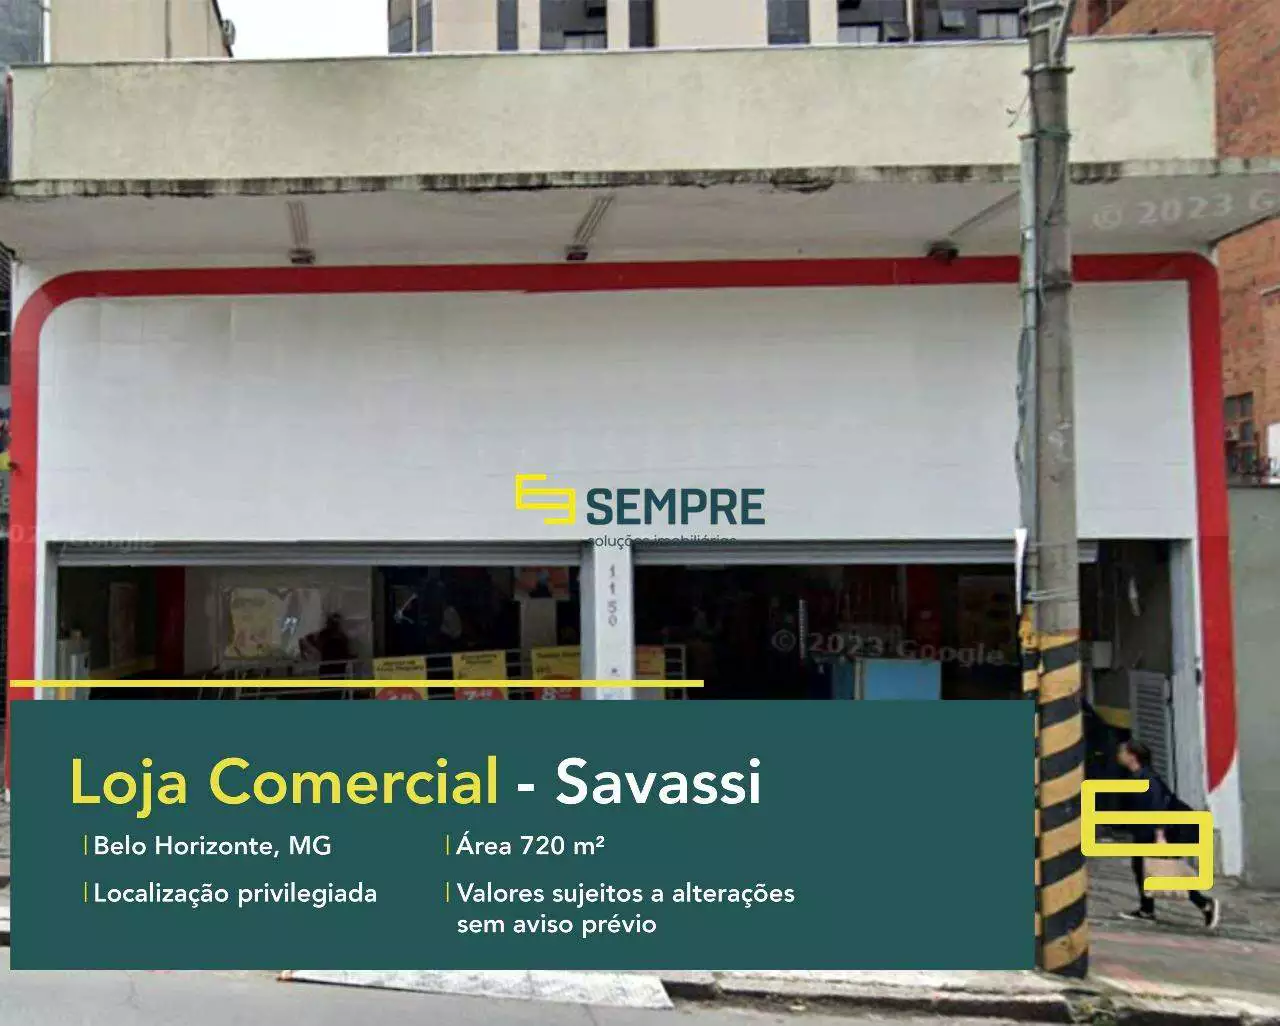 Loja para locação na Savassi em BH, em excelente localização. O estabelecimento comercial conta com área de 1080 m².